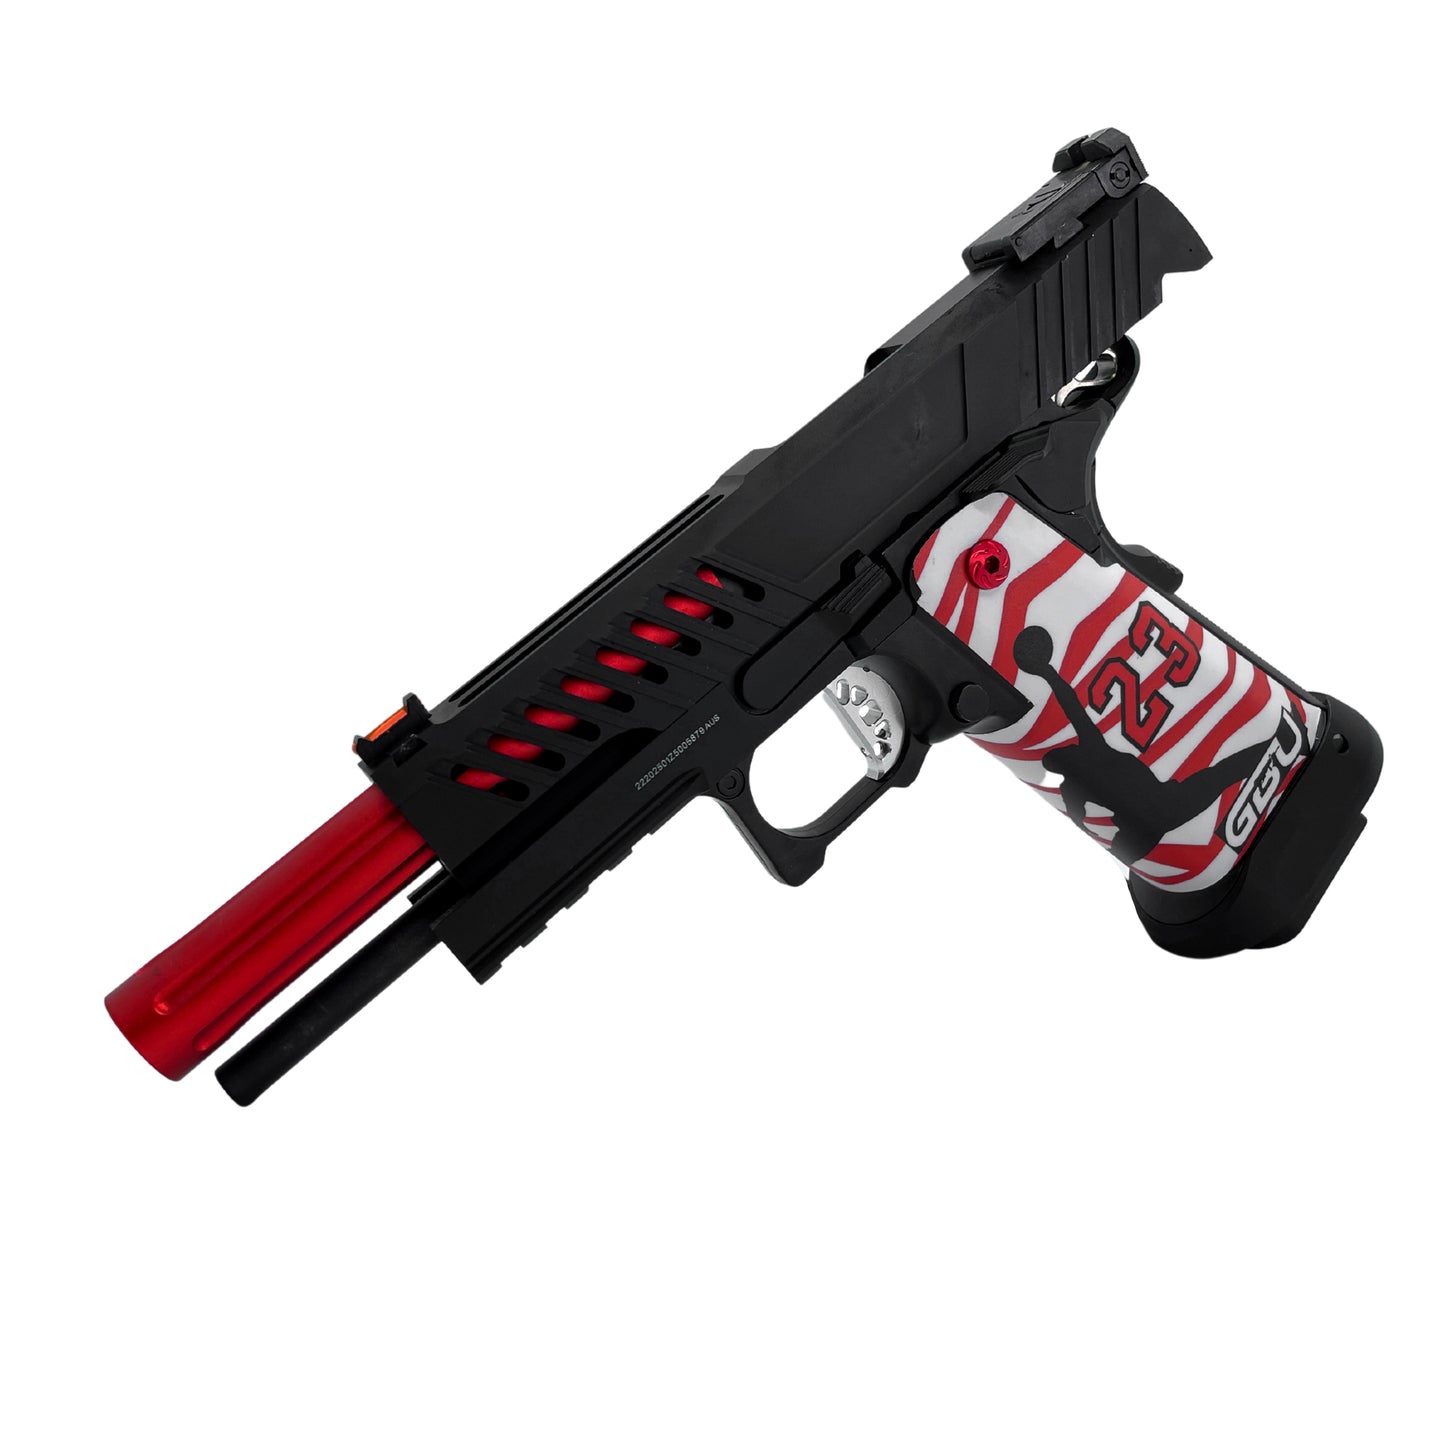 "MJ23" G/E 5.1 Hi-Capa Gas Pistol - Gel Blaster